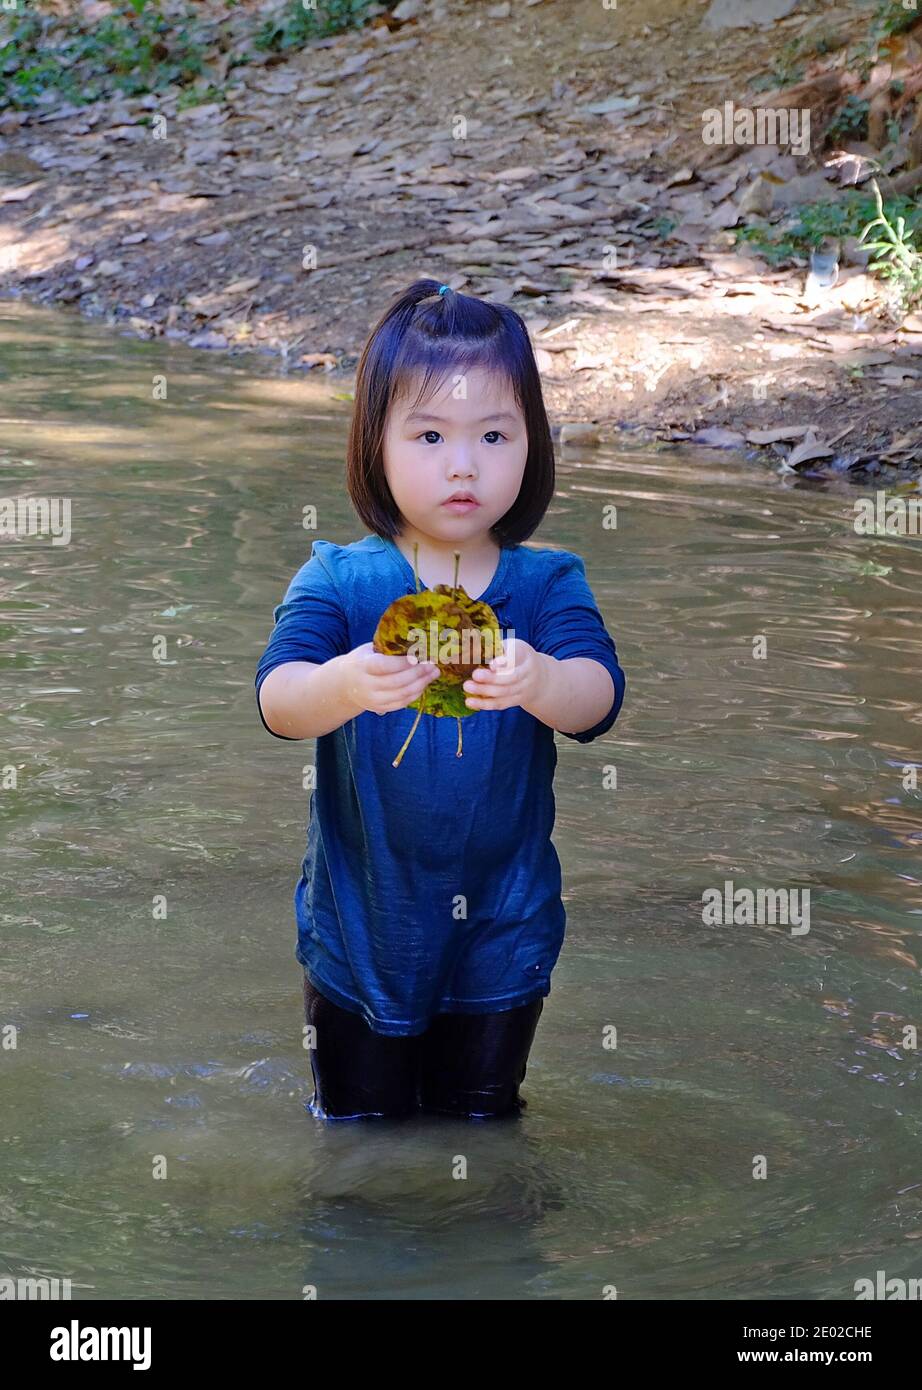 Ein süßes junges asiatisches Mädchen, das in einem kleinen Bach mit klarem Wasser steht und einen Haufen brauner Blätter pflückt. Stockfoto